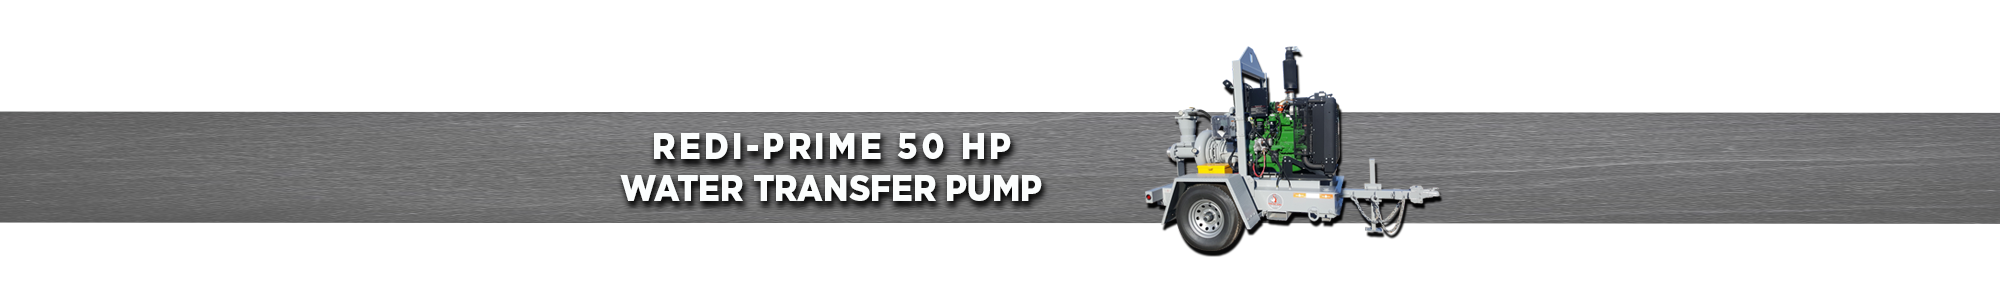 Redi-Prime 50 HP Water transfer pump